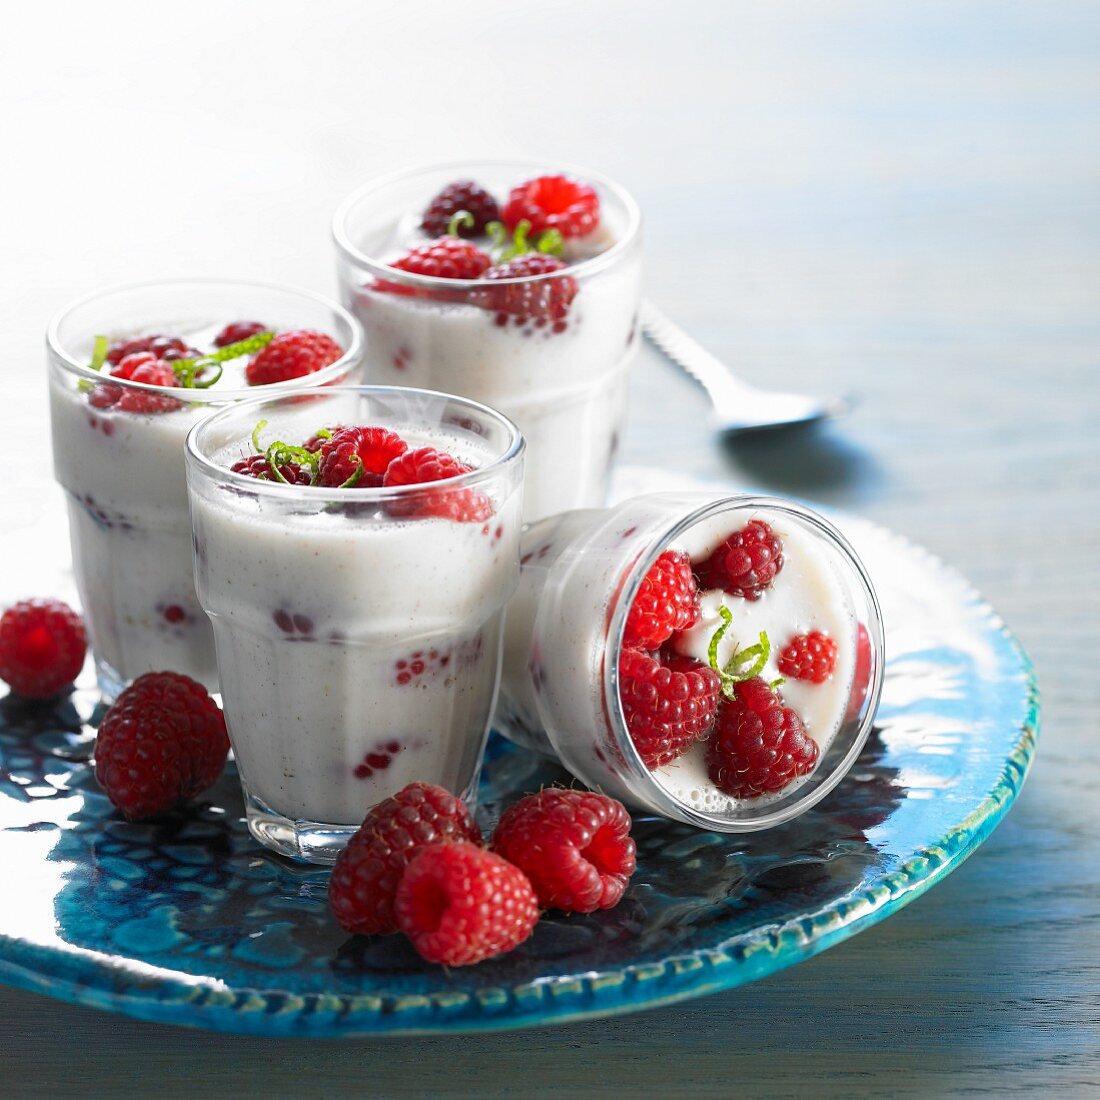 Coconut cream with raspberries